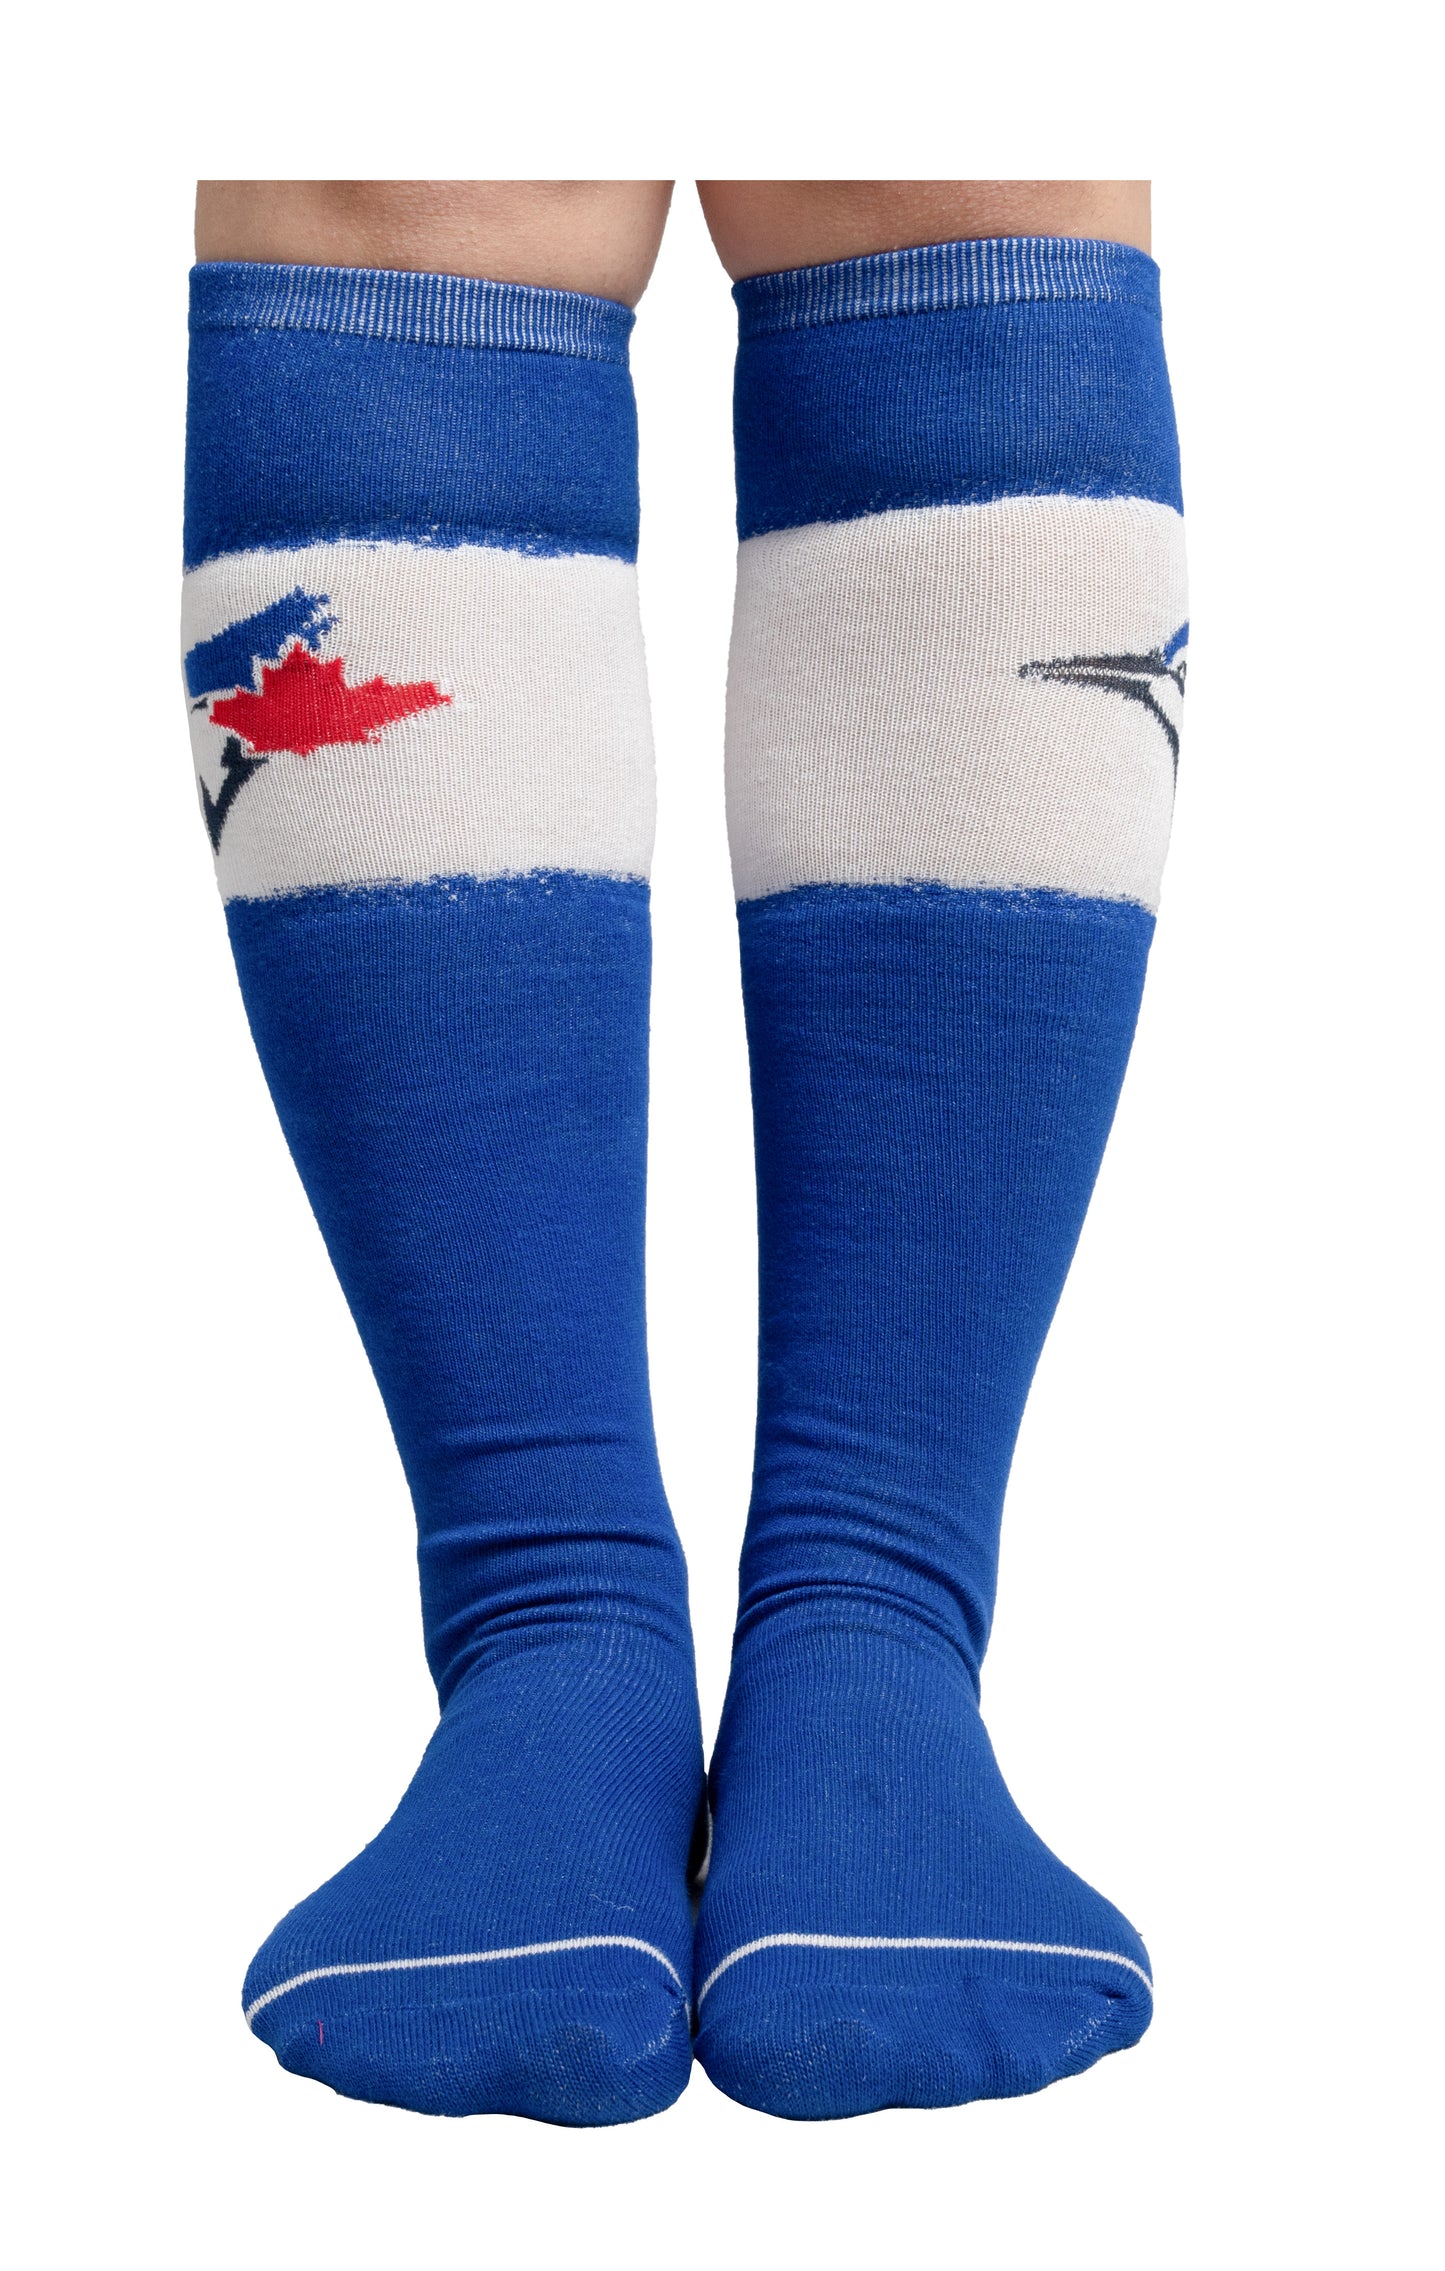 MLB Toronto Blue jays Ladies Knee High Socks